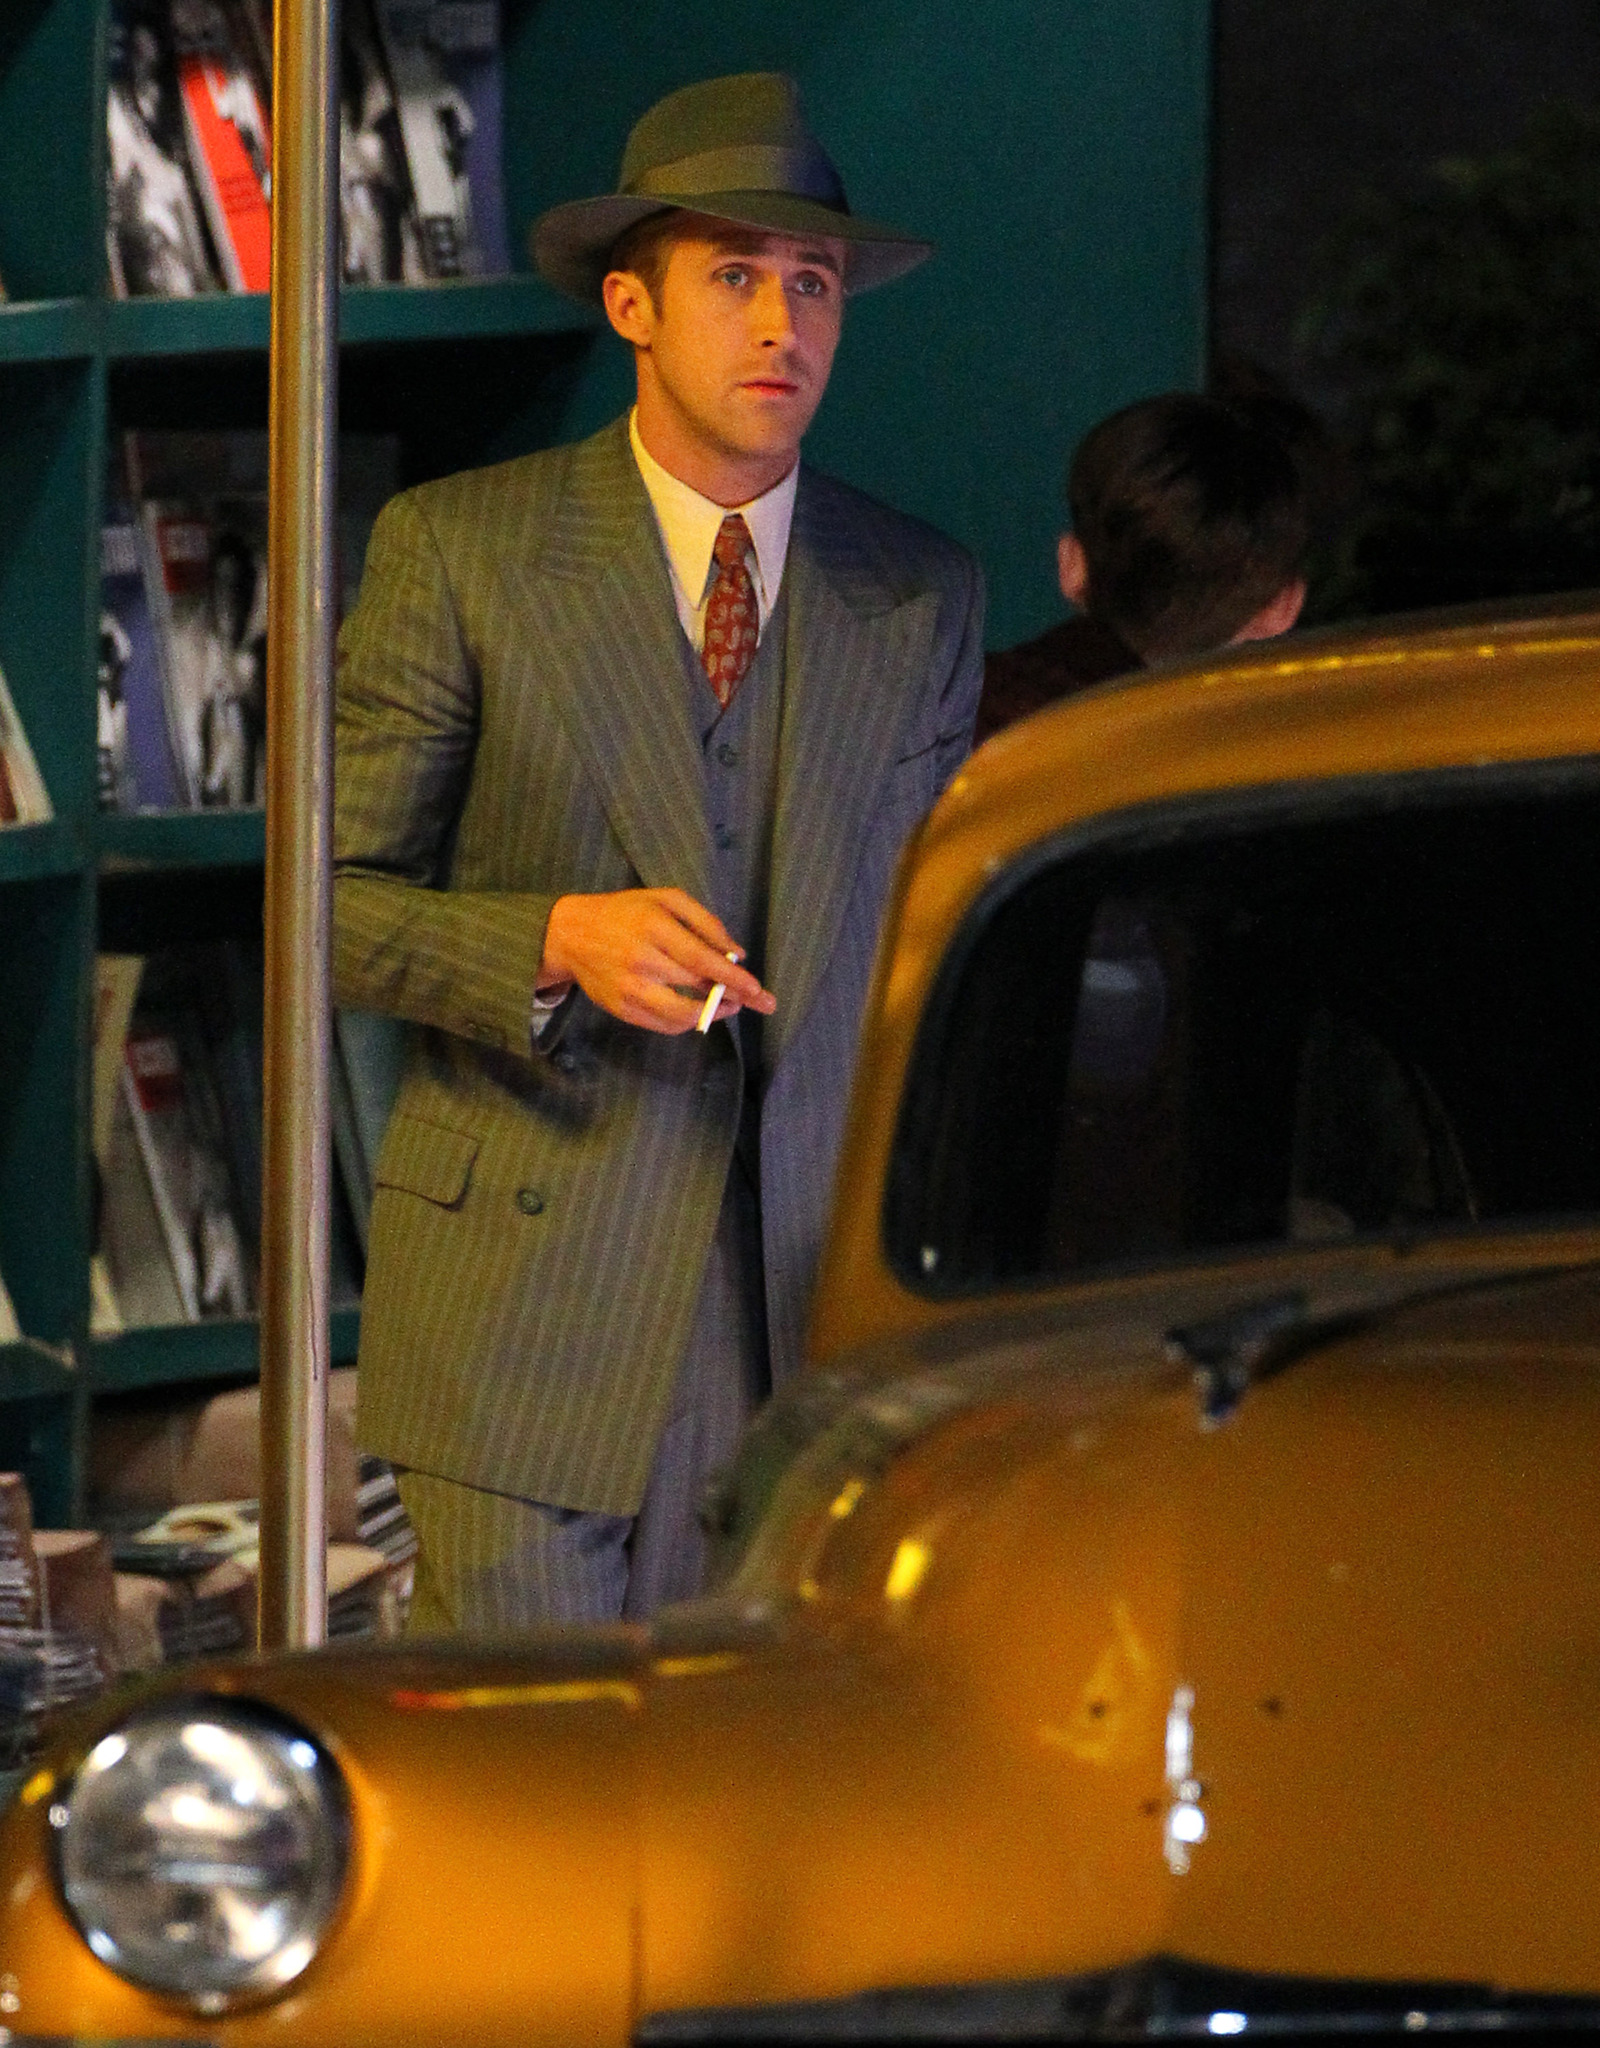 Ryan Gosling at event of Gangsteriu medziotojai (2013)